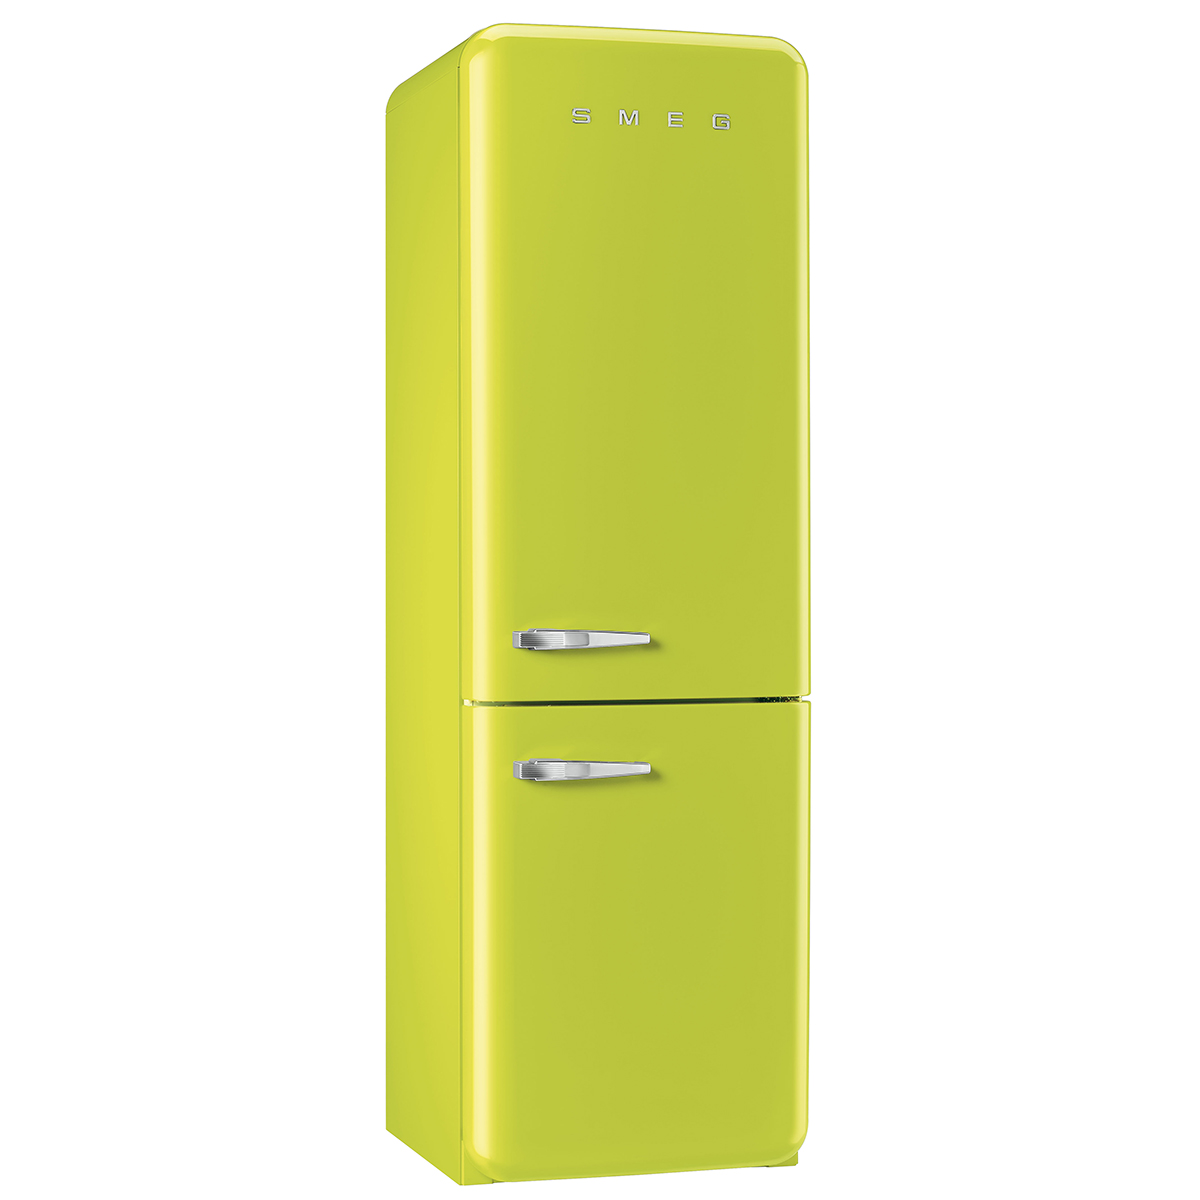 Сайт днс холодильники. Холодильник Smeg fab30lve1. Холодильник Smeg fab50lrd. Холодильник Smeg Fab 32rpg5. Холодильник 60 см Smeg.